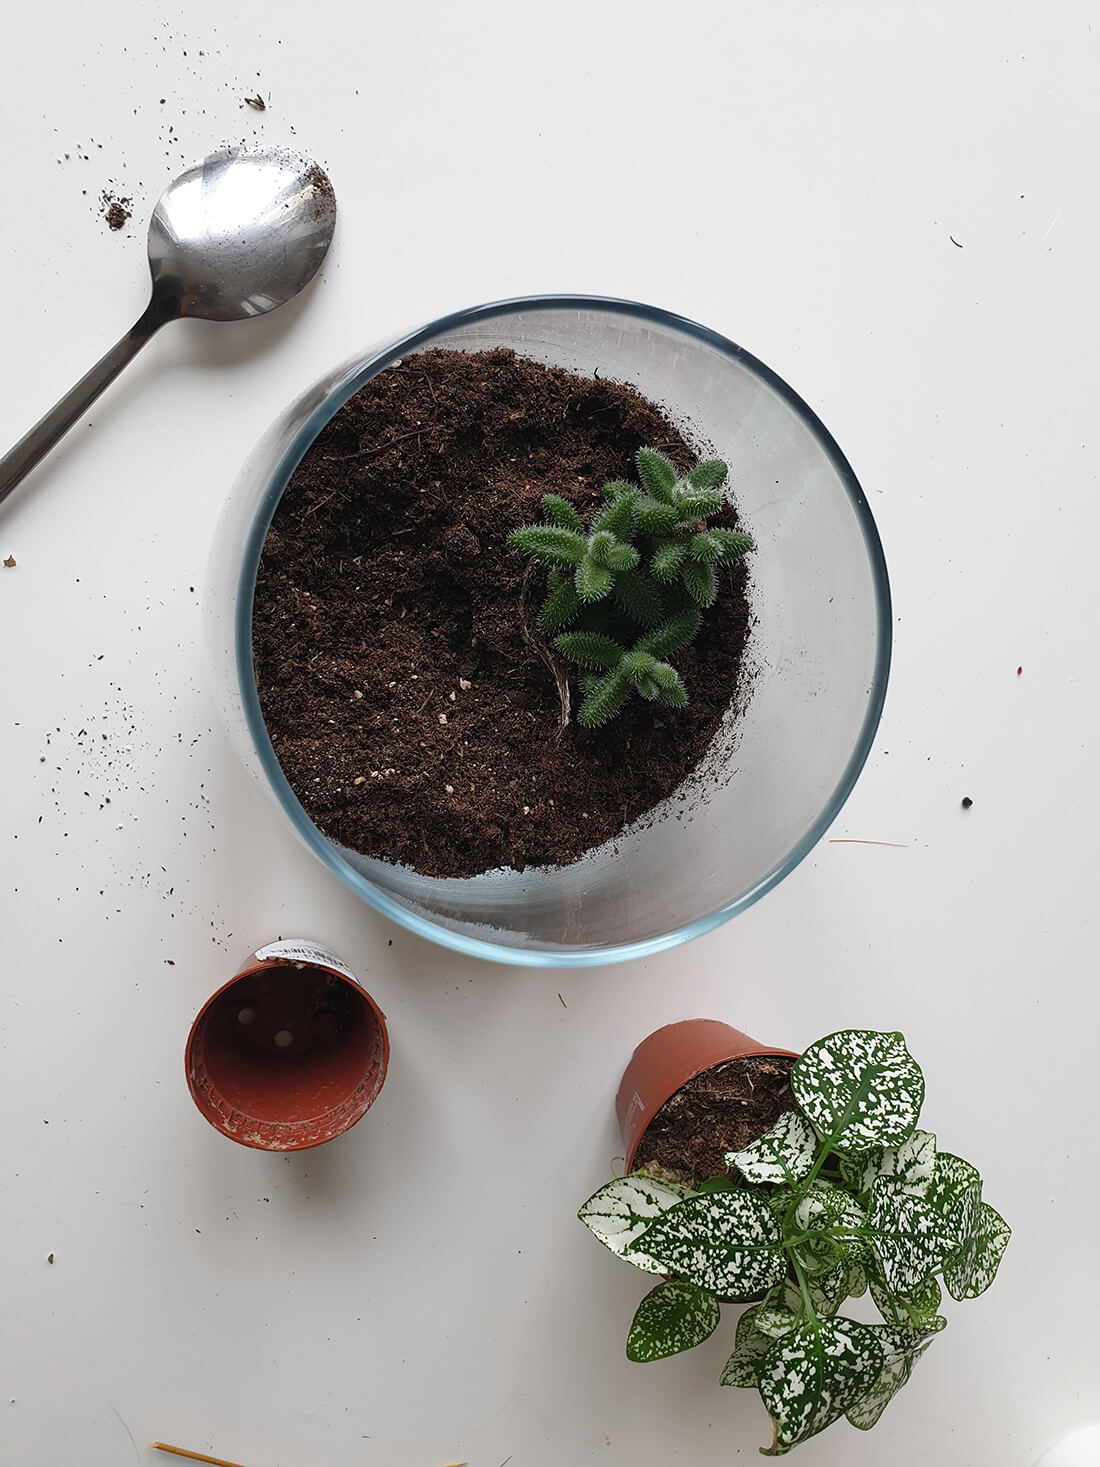 20201022 170642 - DIY végétal : réaliser un terrarium tendance pour la maison